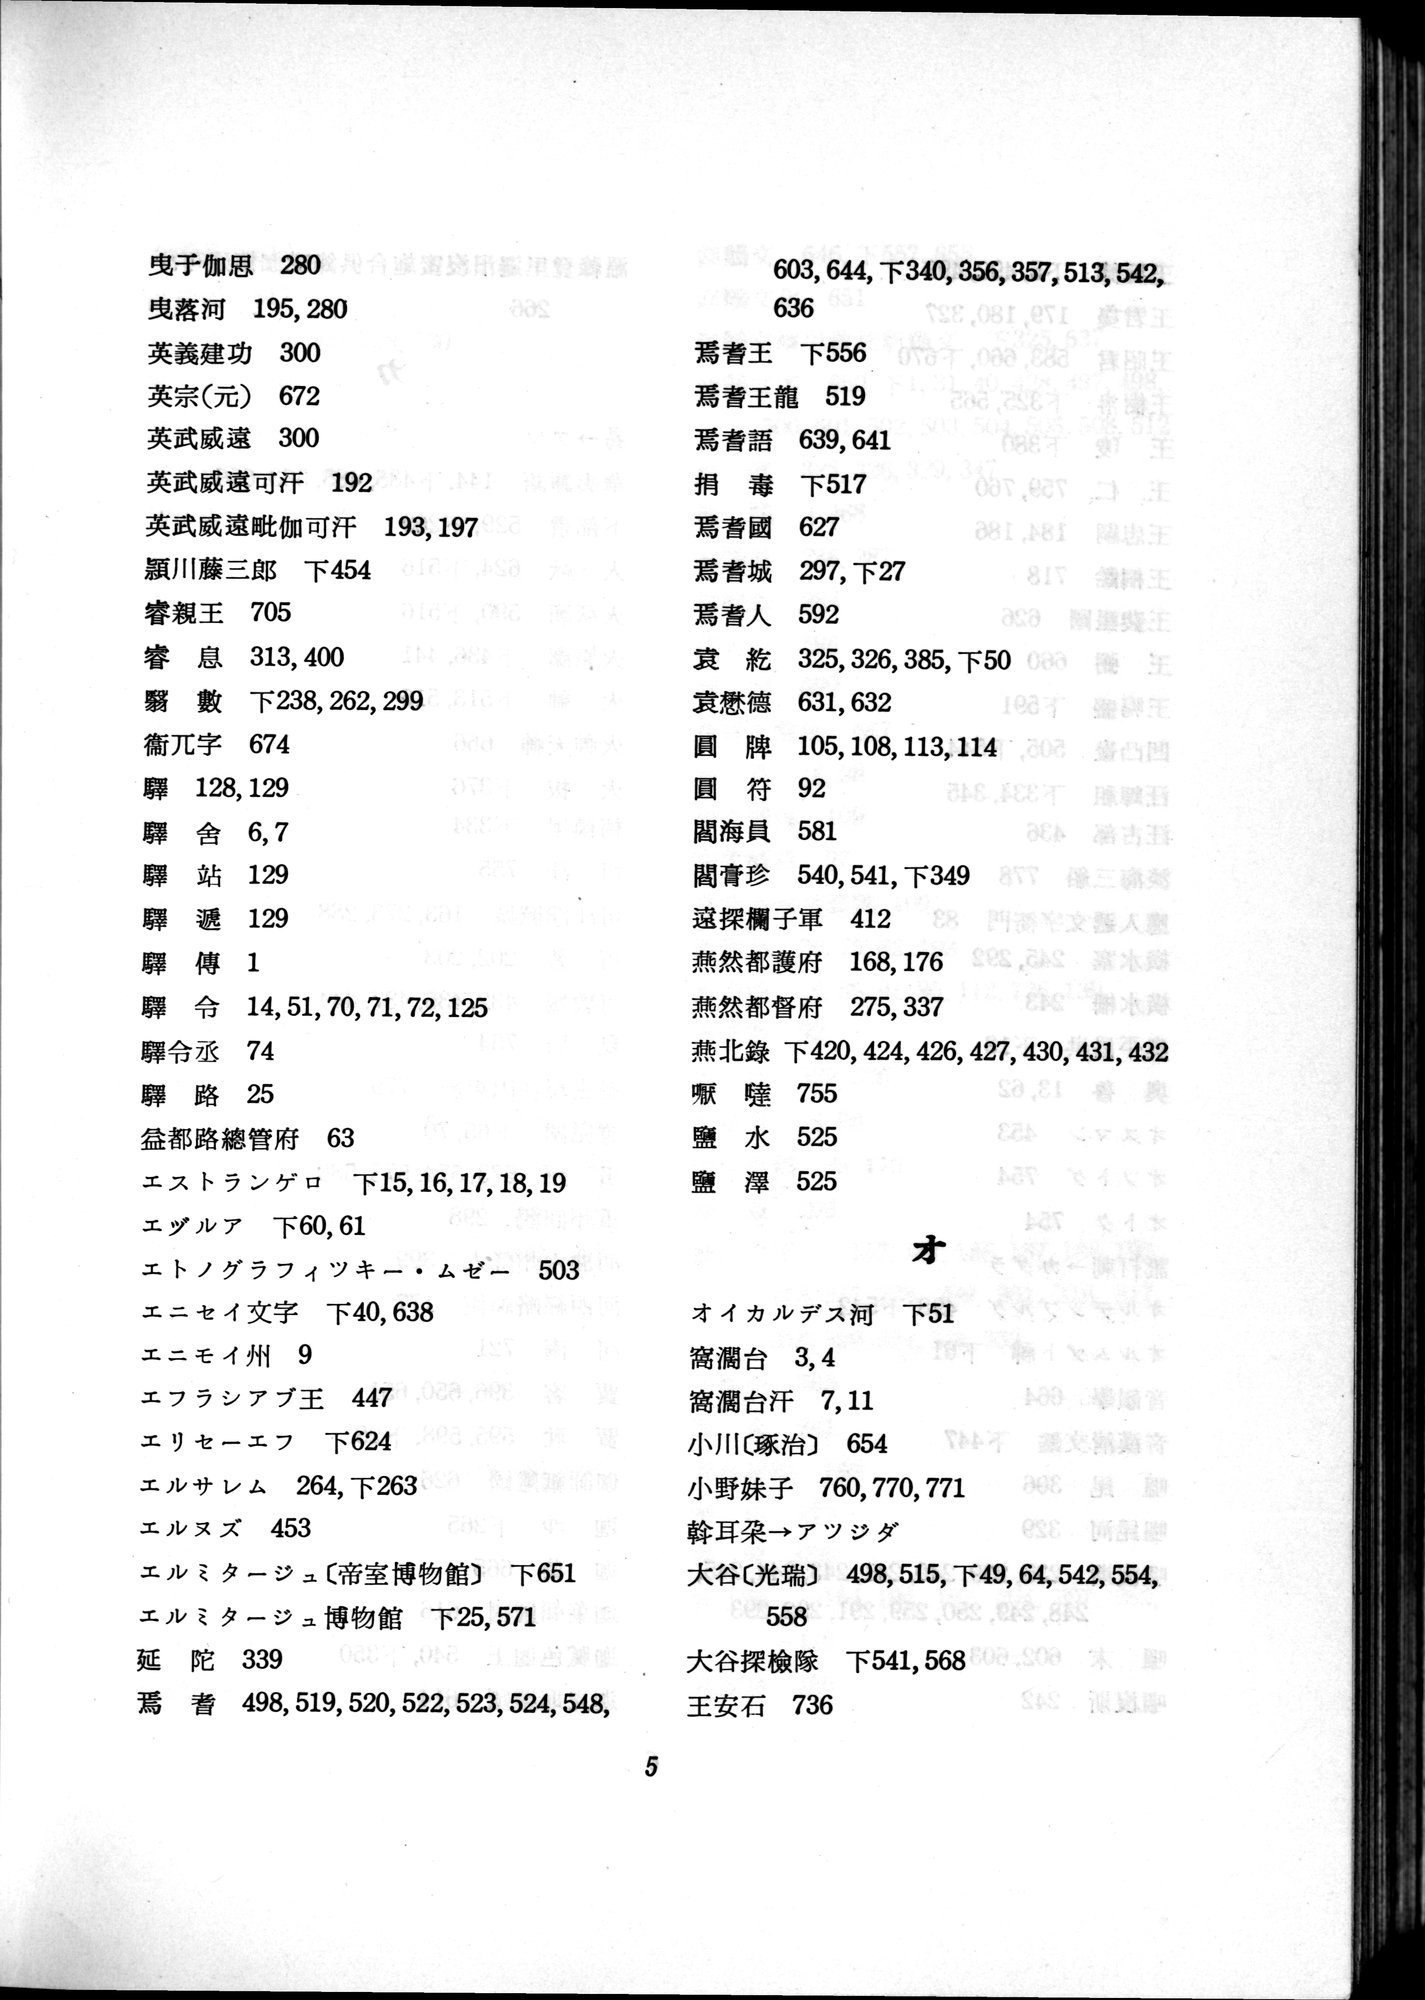 羽田博士史学論文集 : vol.2 / 802 ページ（白黒高解像度画像）